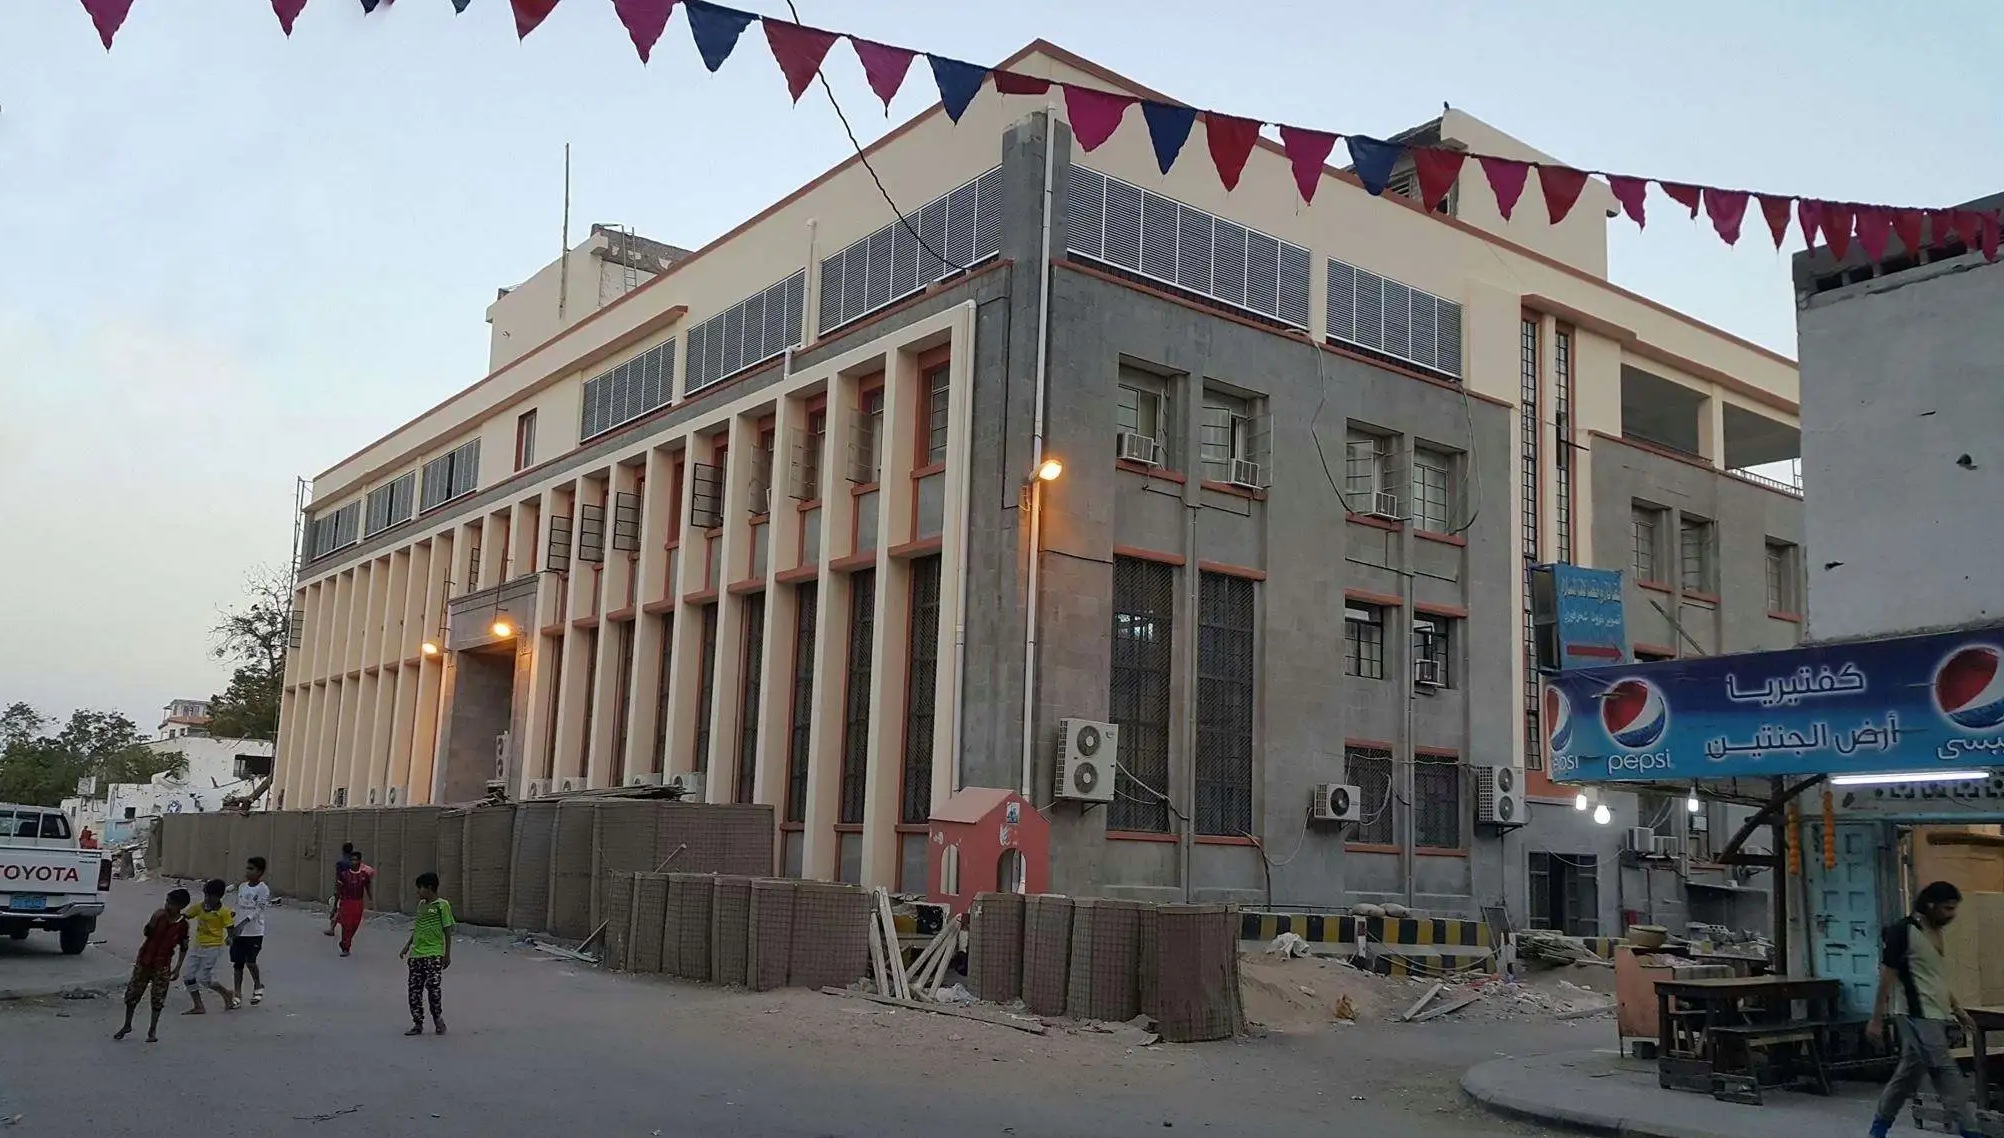 البنك المركزي اليمني يعلن وقف التعامل مع 6 بنوك ومصارف مع انتهاء مهلته لنقل مقارها إلى عدن